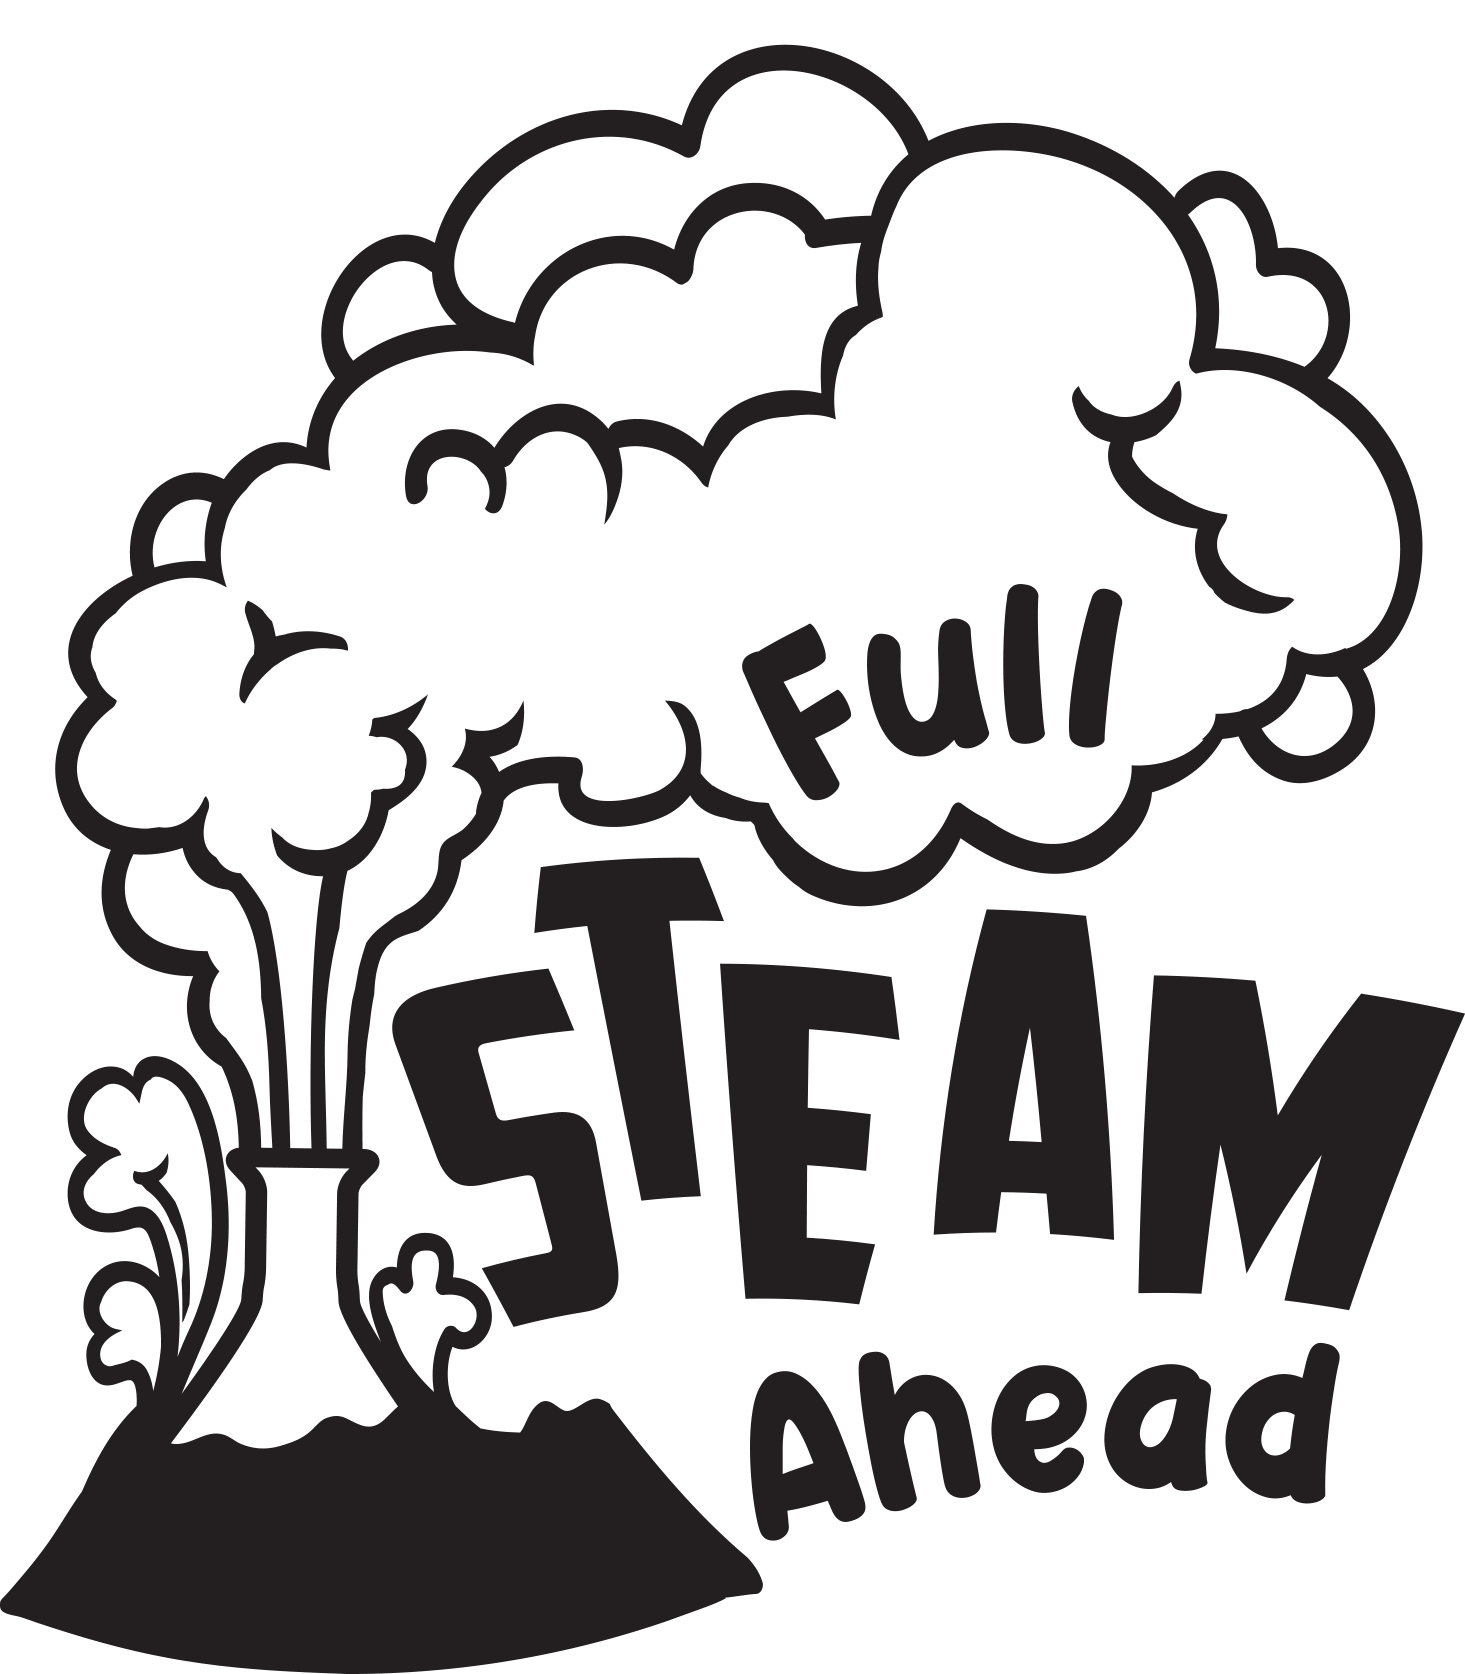 MSU STEAM Day logo